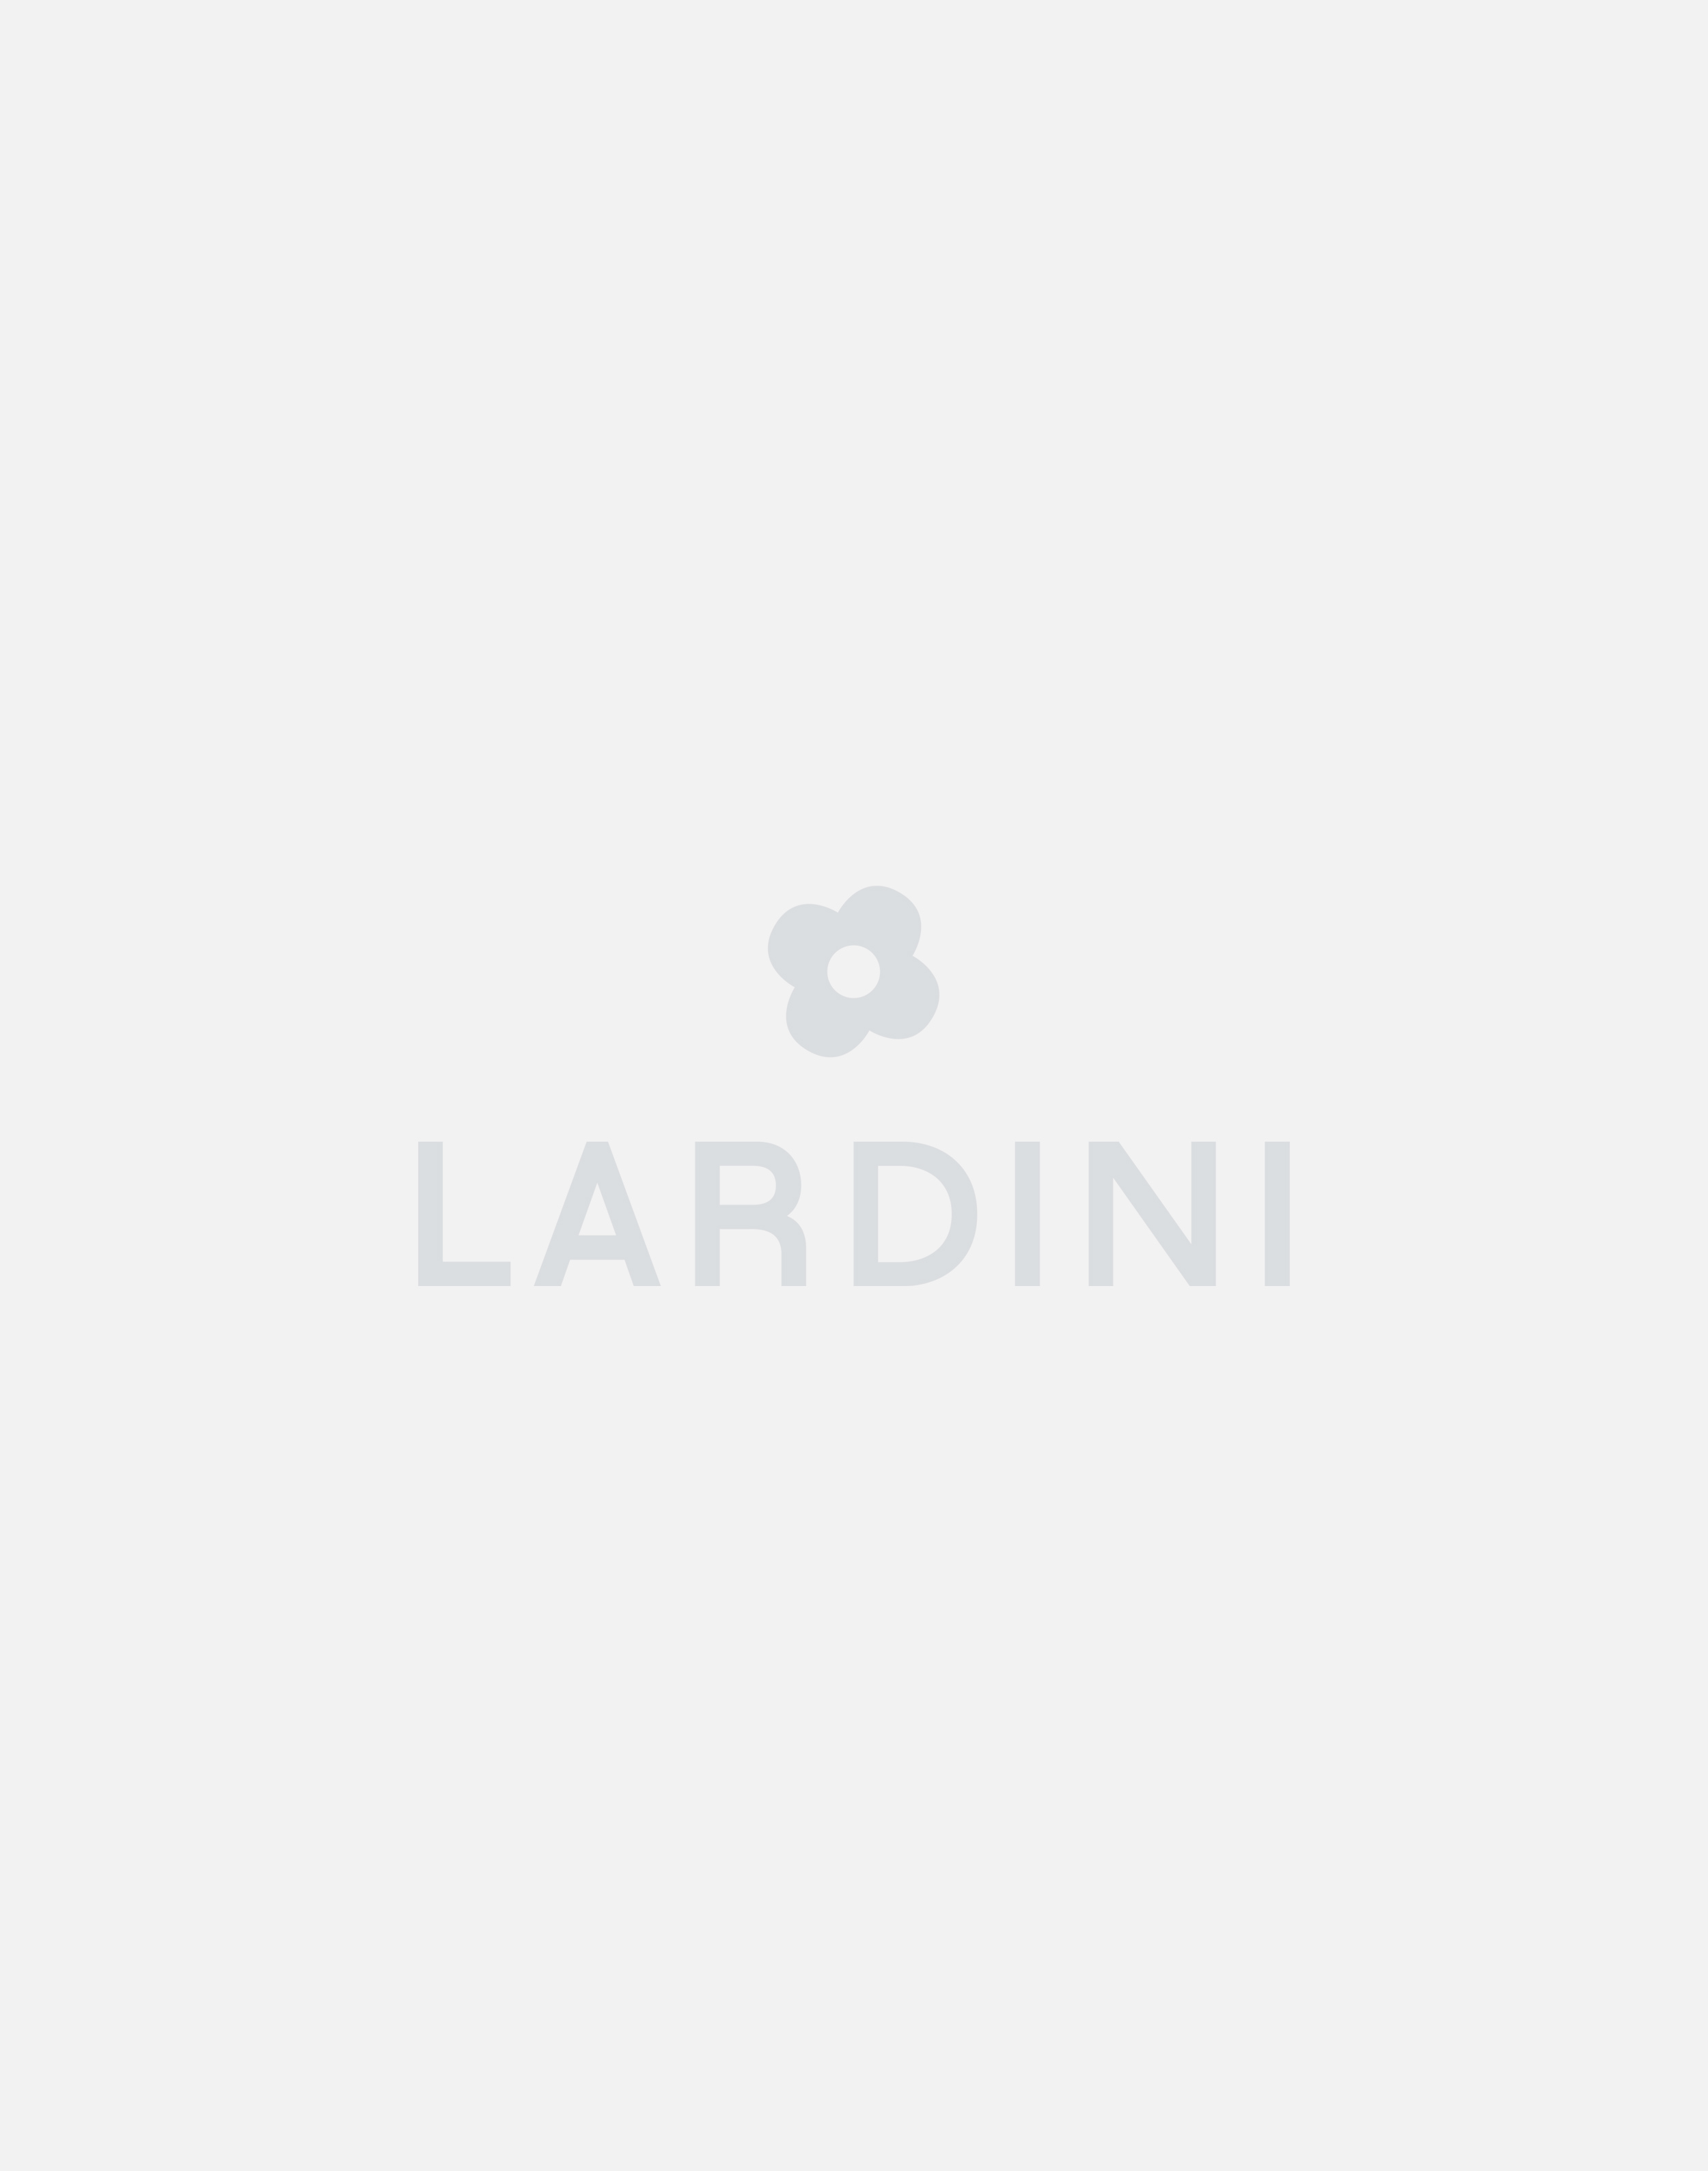 Cream trousers - Luigi Lardini capsule 2